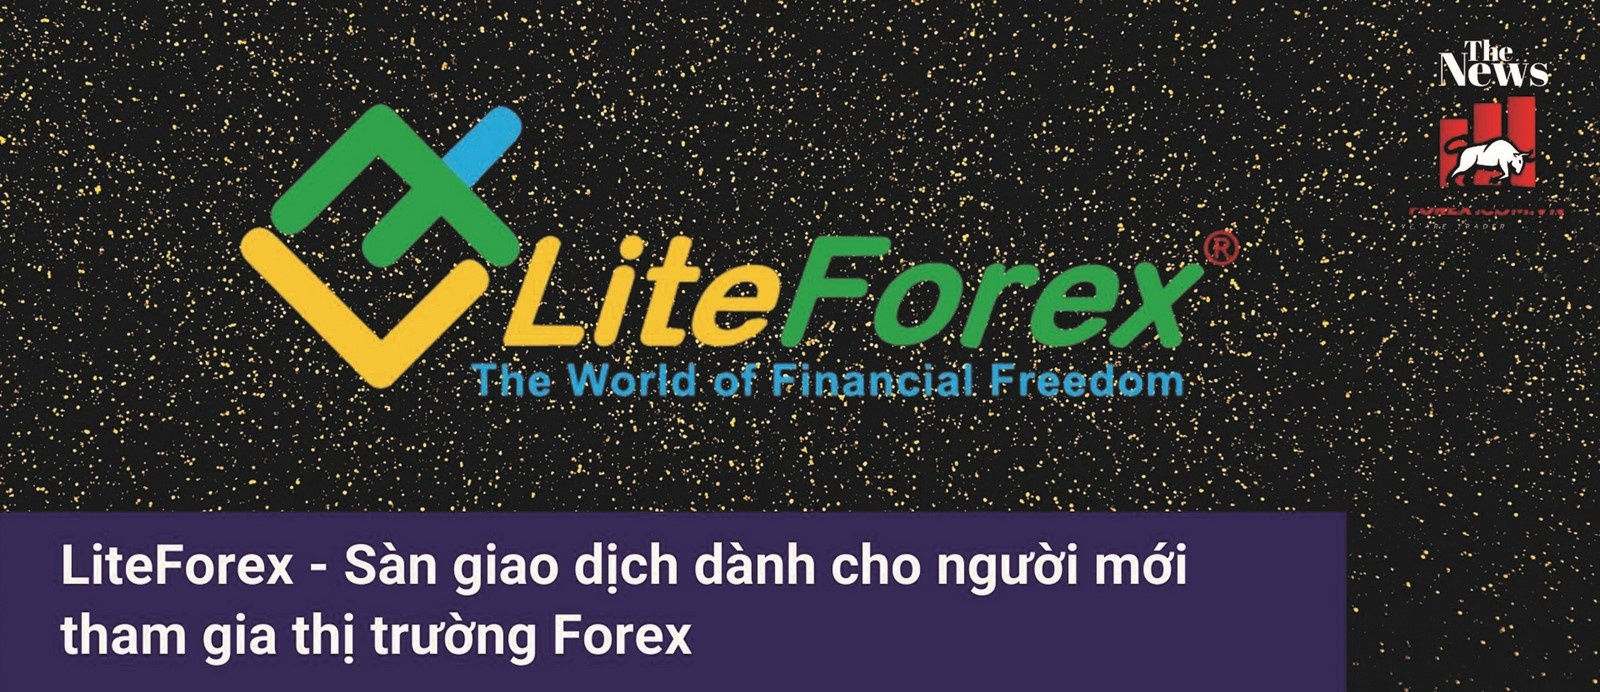 Cẩn trọng với bẫy đầu tư Forex